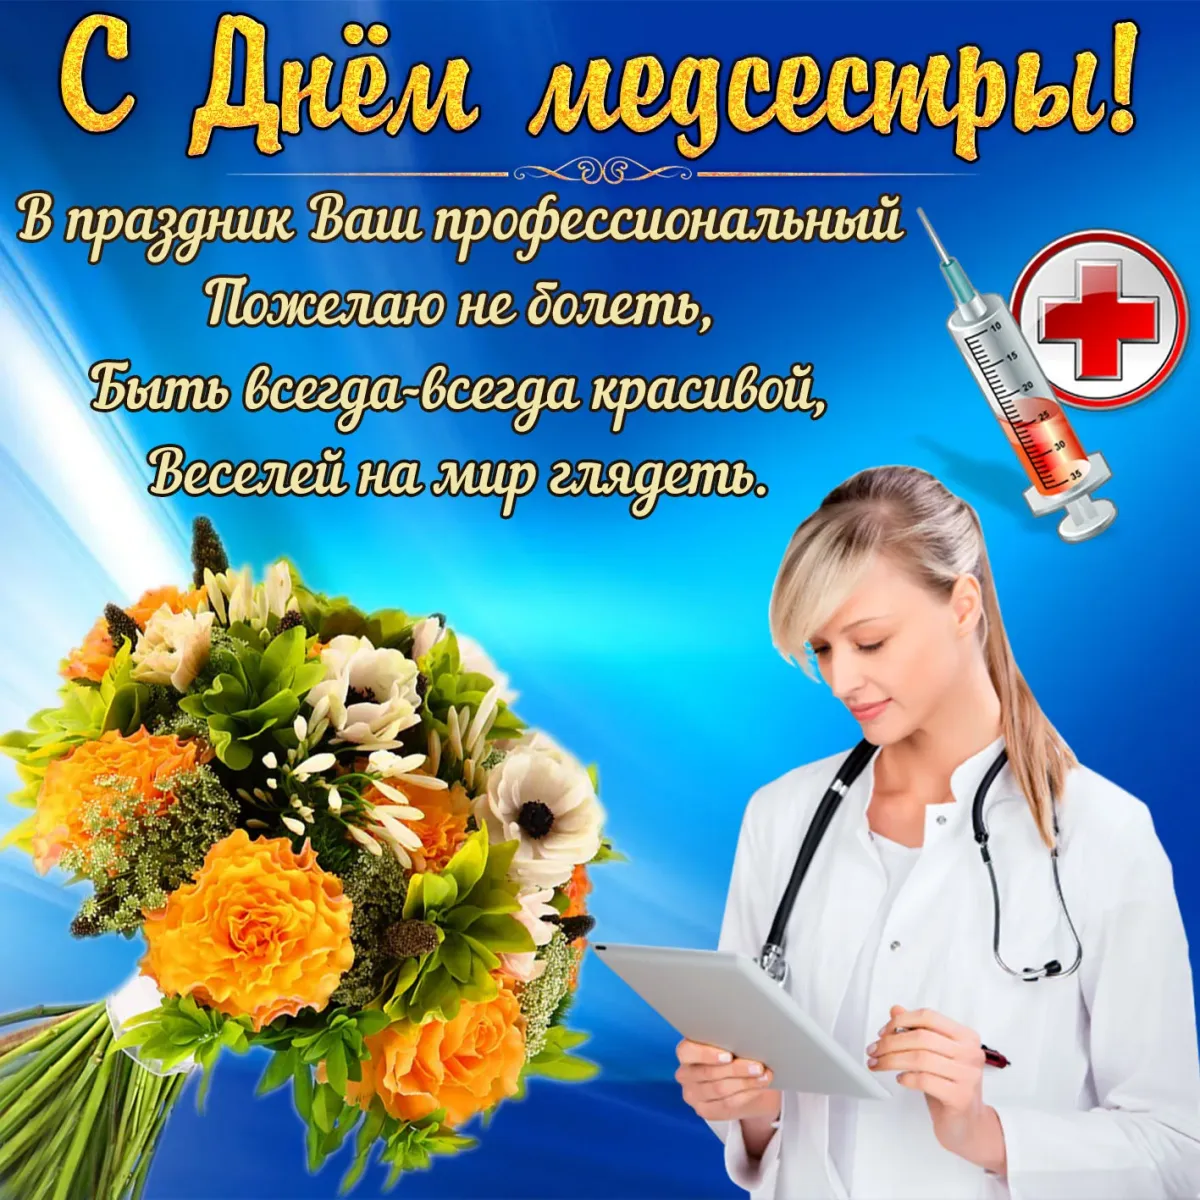 Поздравление с днем профессиональным праздником. С днём медицинской сестры поздравления. Поздравления с днём медсестры. Поздравление с днём мединской сестры. Открытки с днем медицинской сестры.